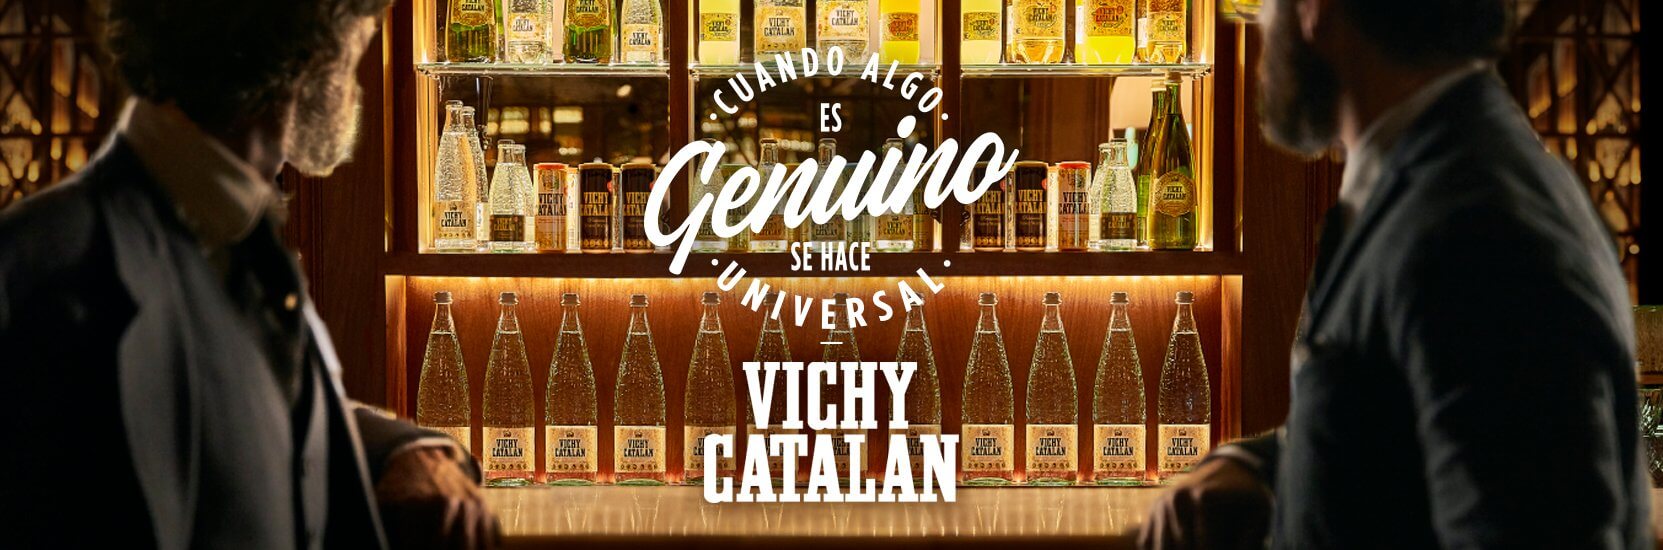 vichy catalan distribuidores de bebidas y alimentos en alicante 032001